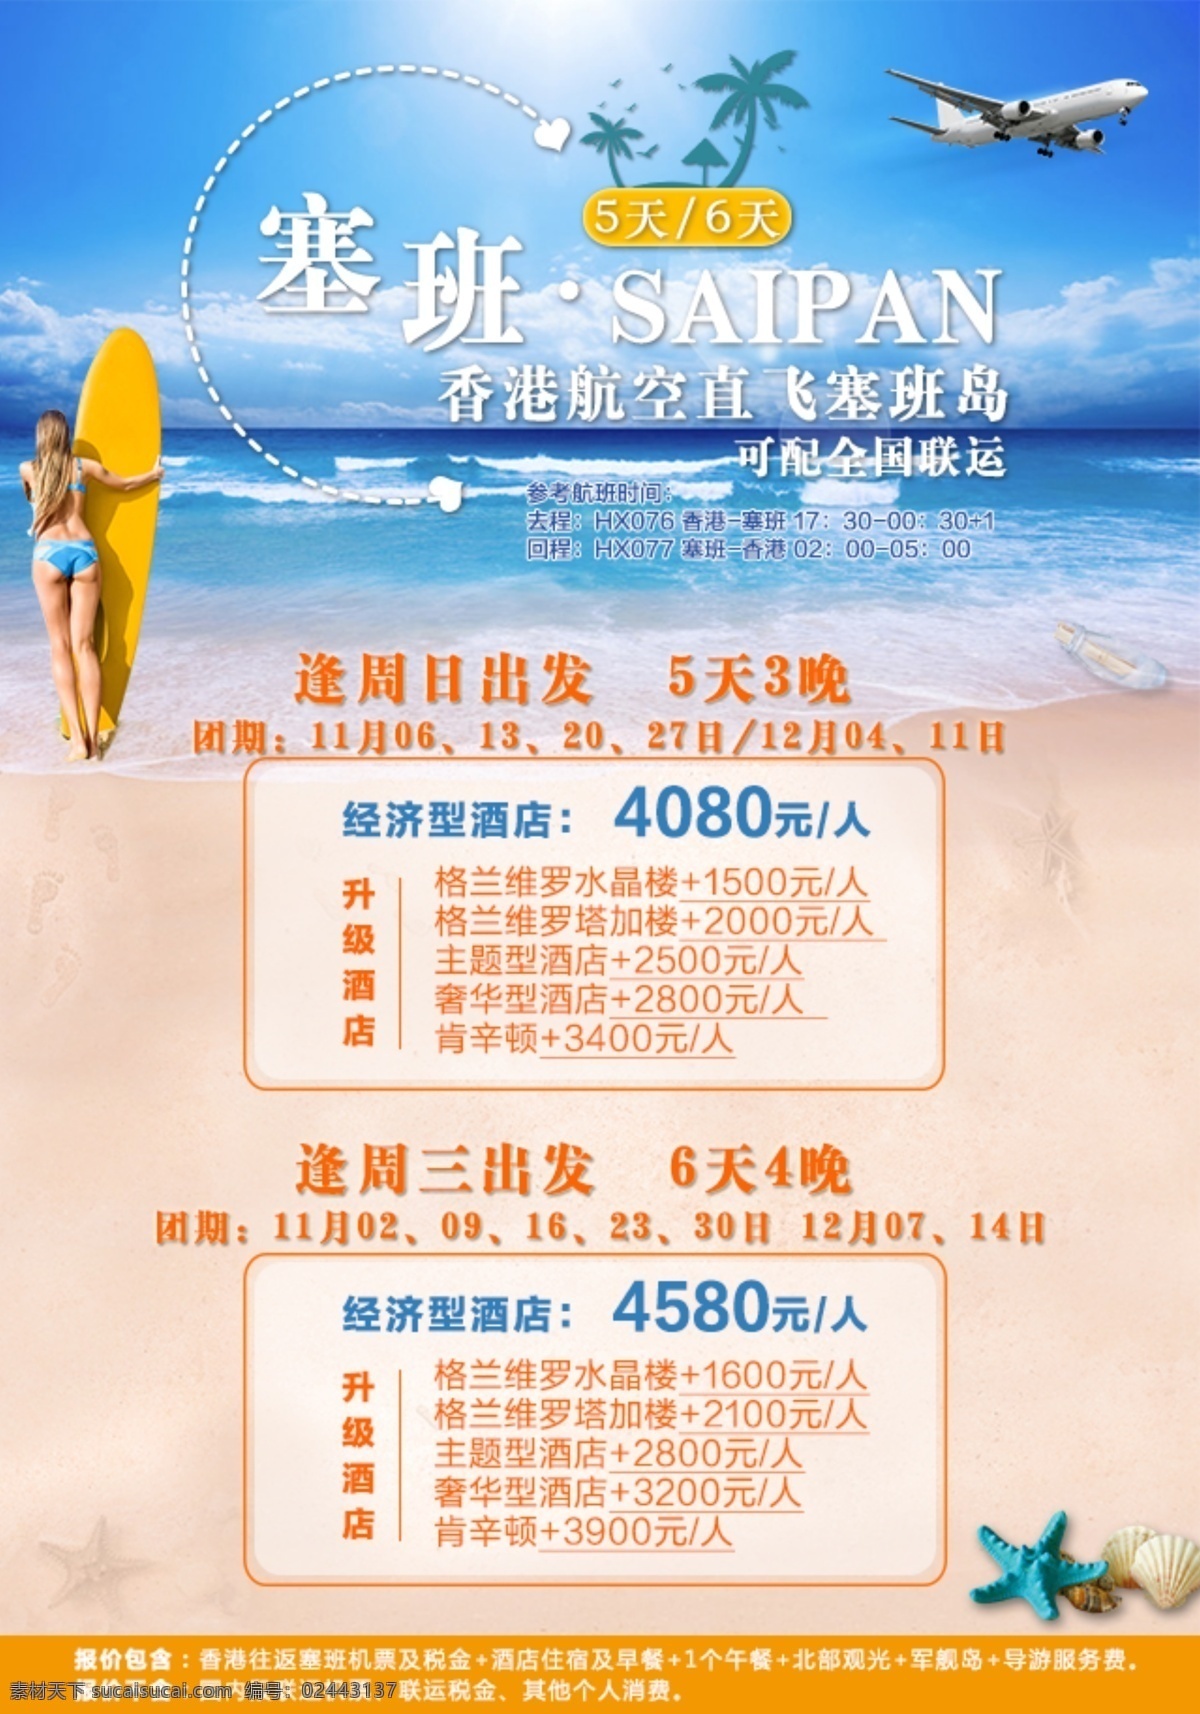 塞班 旅游团 期 计划 海岛 旅游 微信 广告